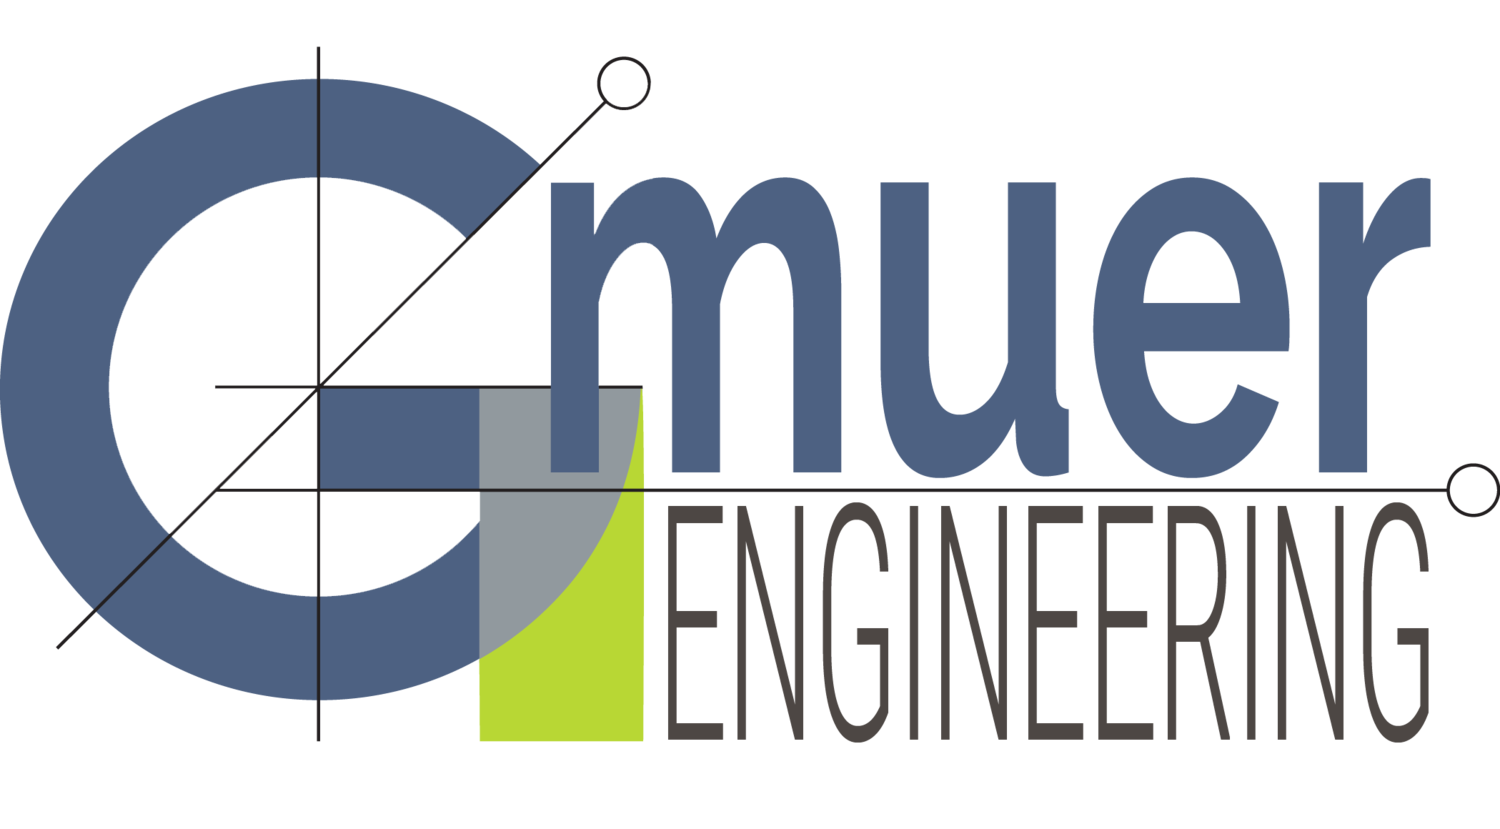 Gmuer Engineering